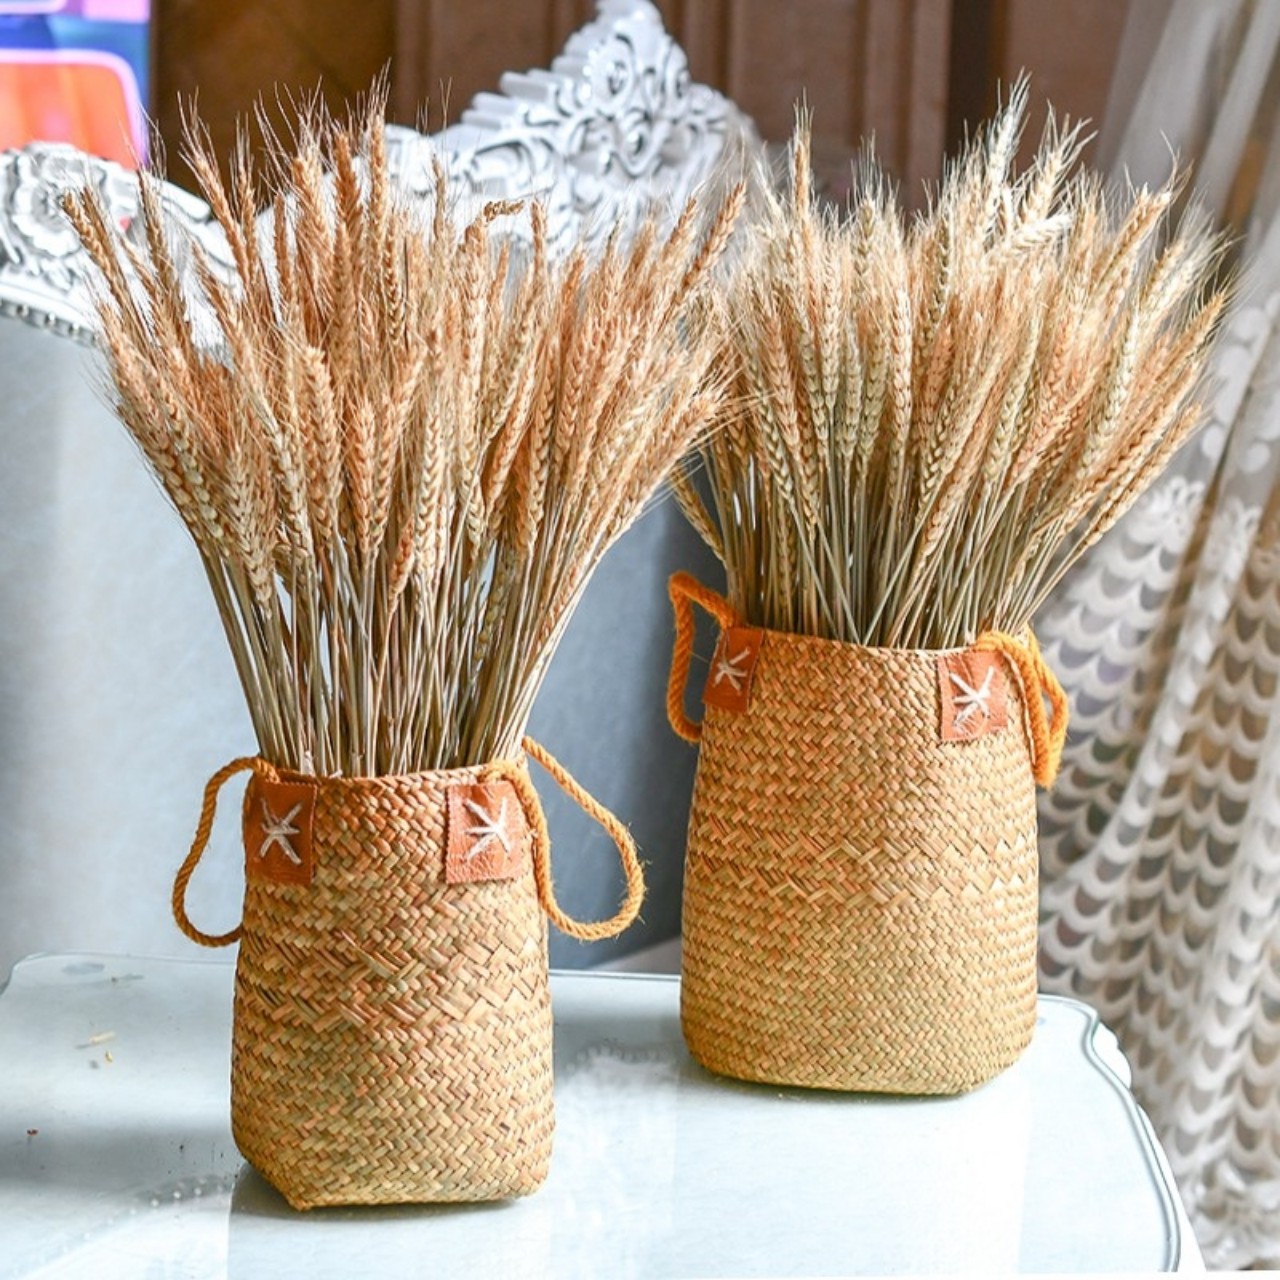 Bó lúa mạch khô tự nhiên 50 bông trang trí phong cách vintage, hoa lúa mì khô phụ kiện chụp ảnh nghệ thuật LM-50